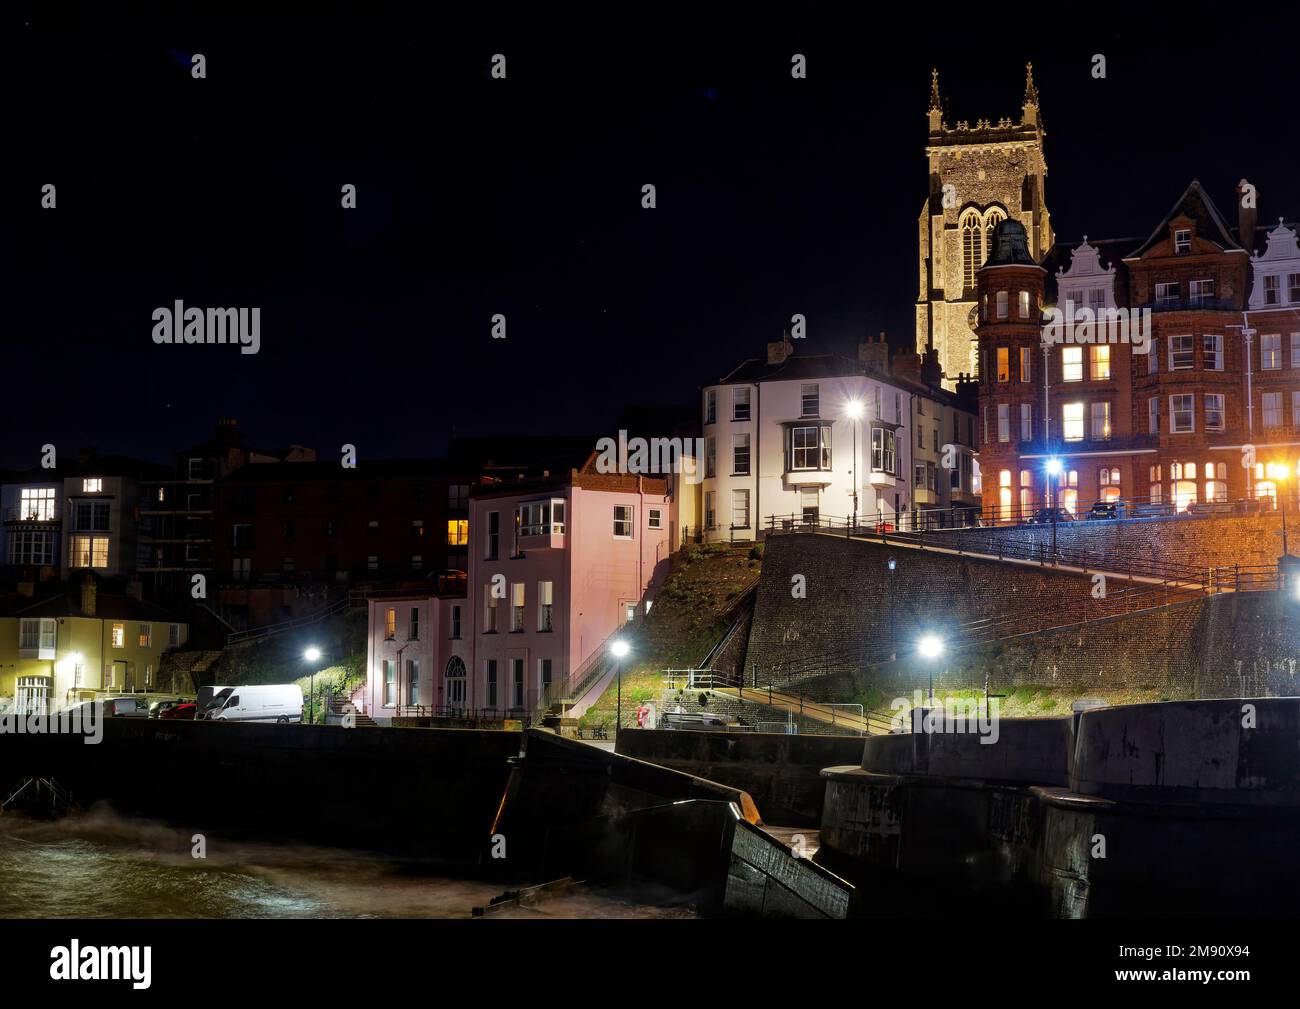 En regardant vers l'église Cromer et les rues des marins, Cromer Pier dans le nord de Norfolk la nuit, lors d'une soirée d'automne froide avec une lueur chaleureuse provenant de bâtiments éclairés. Banque D'Images